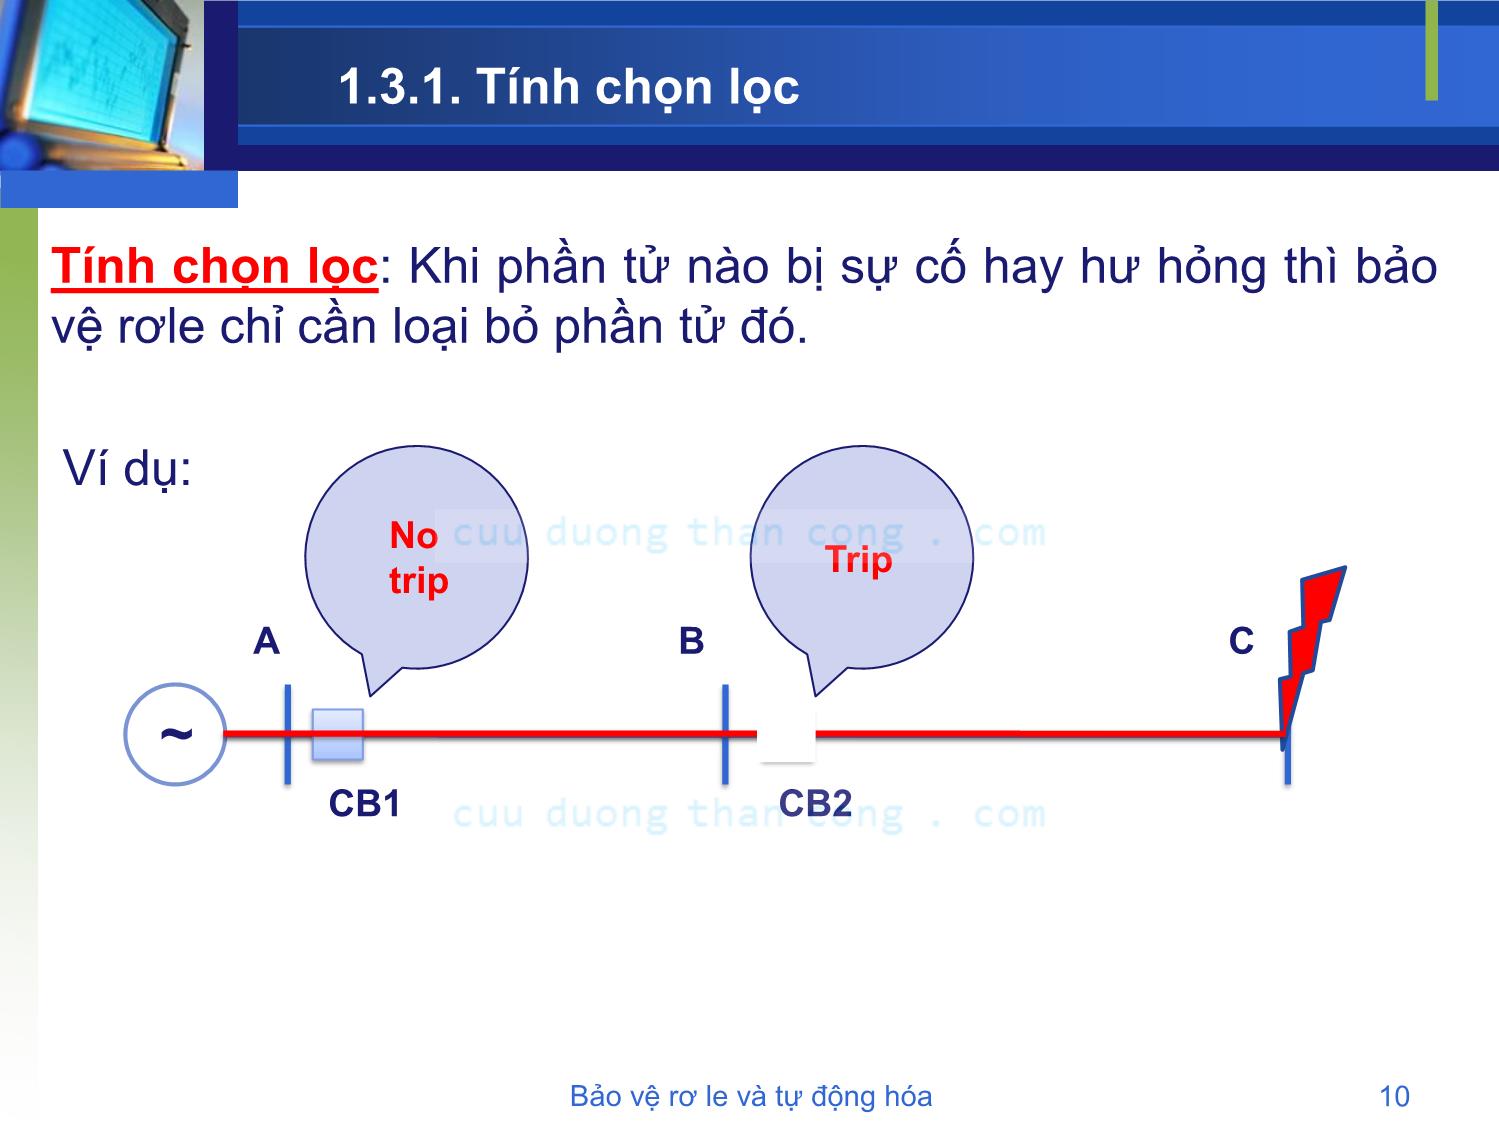 Bài giảng Bảo vệ rơle và tự động hóa - Chương 1: Tổng quan về hệ thống bảo vệ - Phạm Thị Minh Thái trang 10